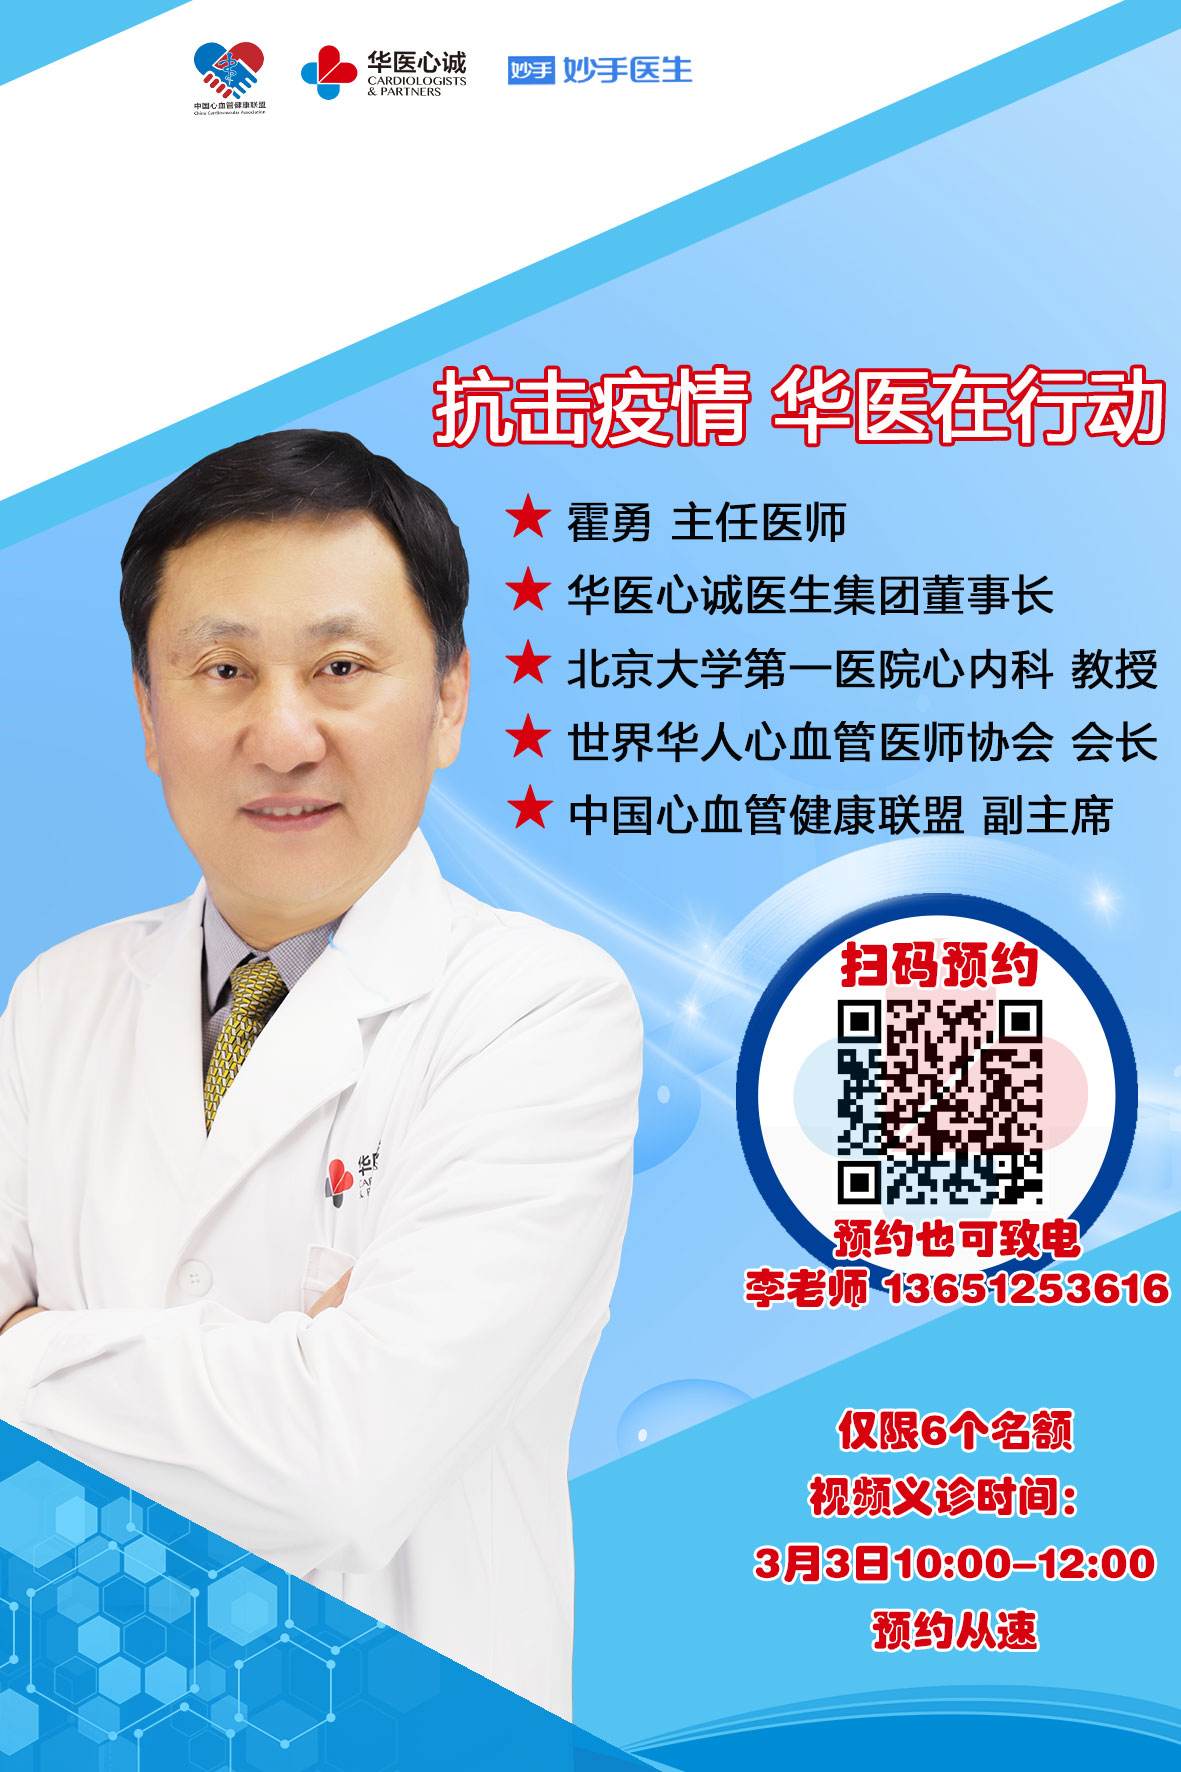 关于北京大学第一医院支持医院取号全程跑腿!的信息